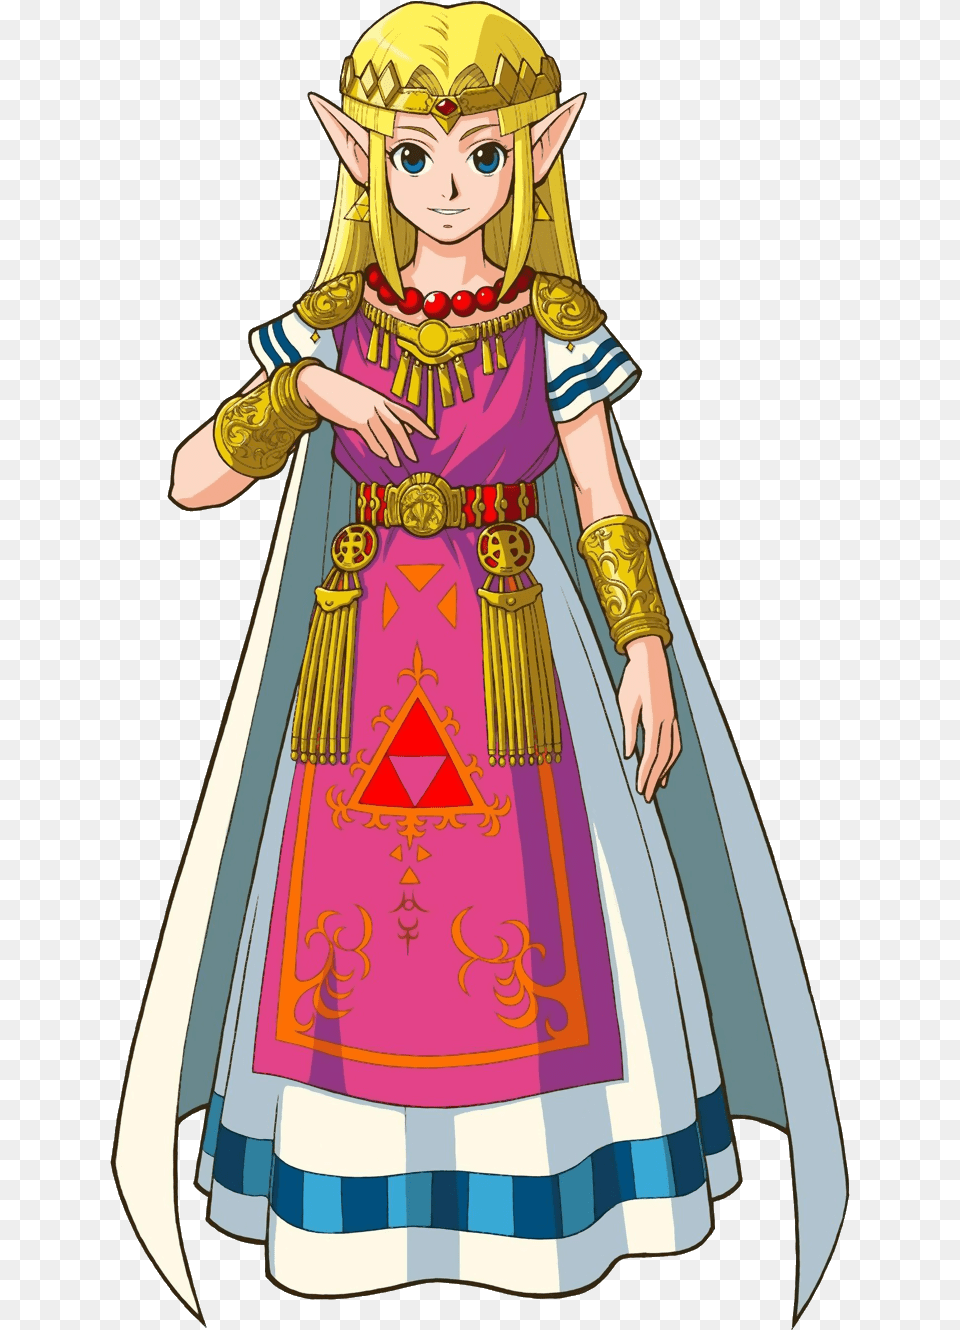 Princess Zelda The Legend Of Zelda Legend Of Zelda, Adult, Person, Female, Woman Free Transparent Png